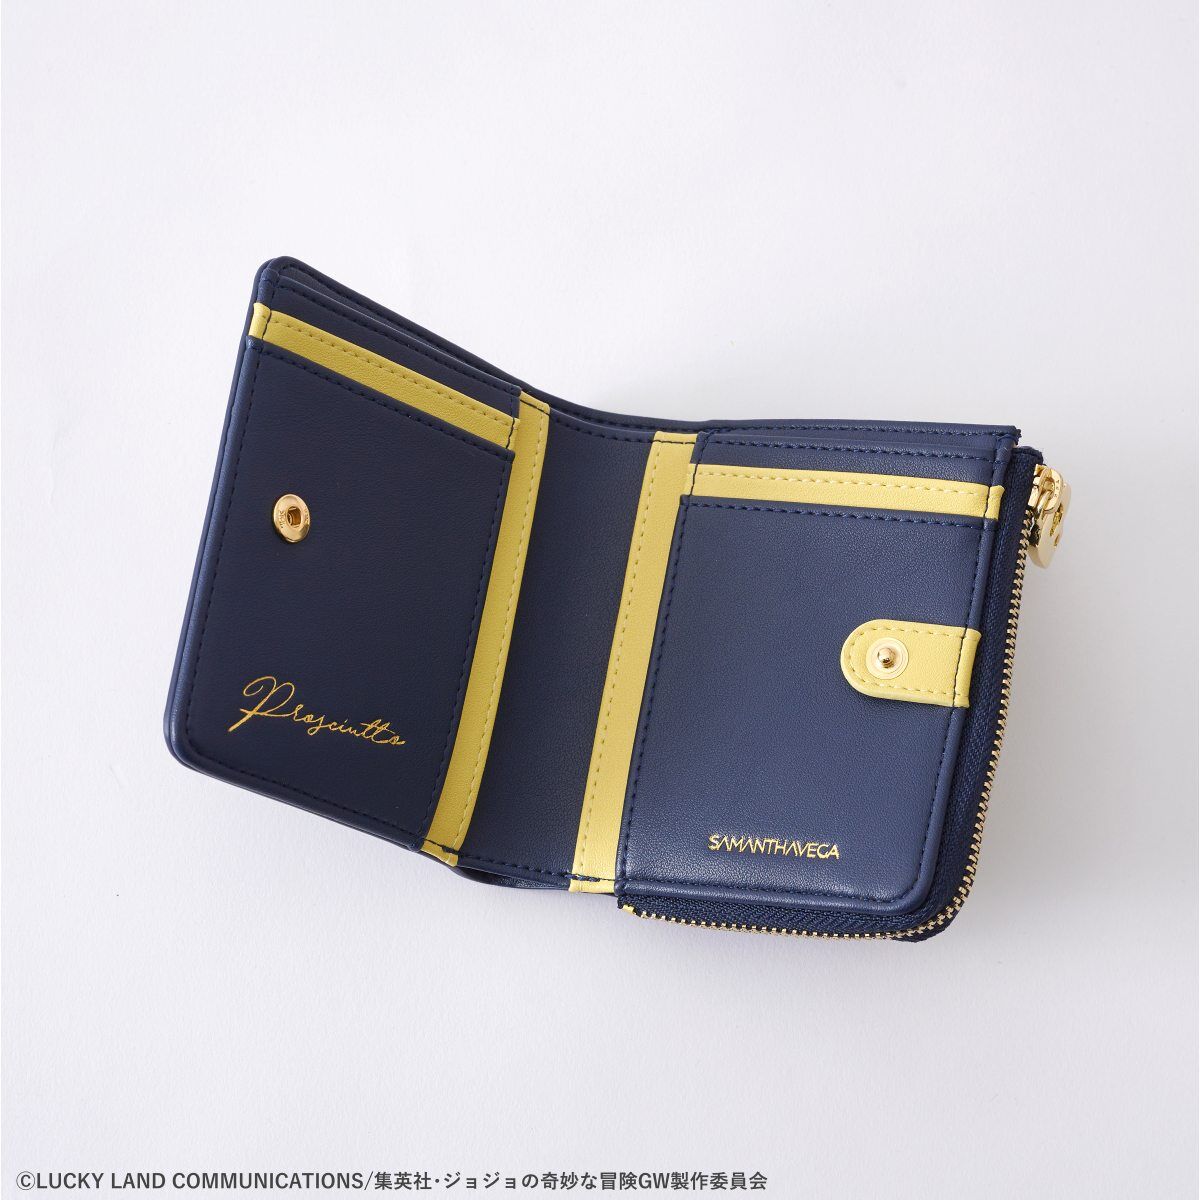 ジョジョの奇妙な冒険 黄金の風×サマンサベガ 折財布